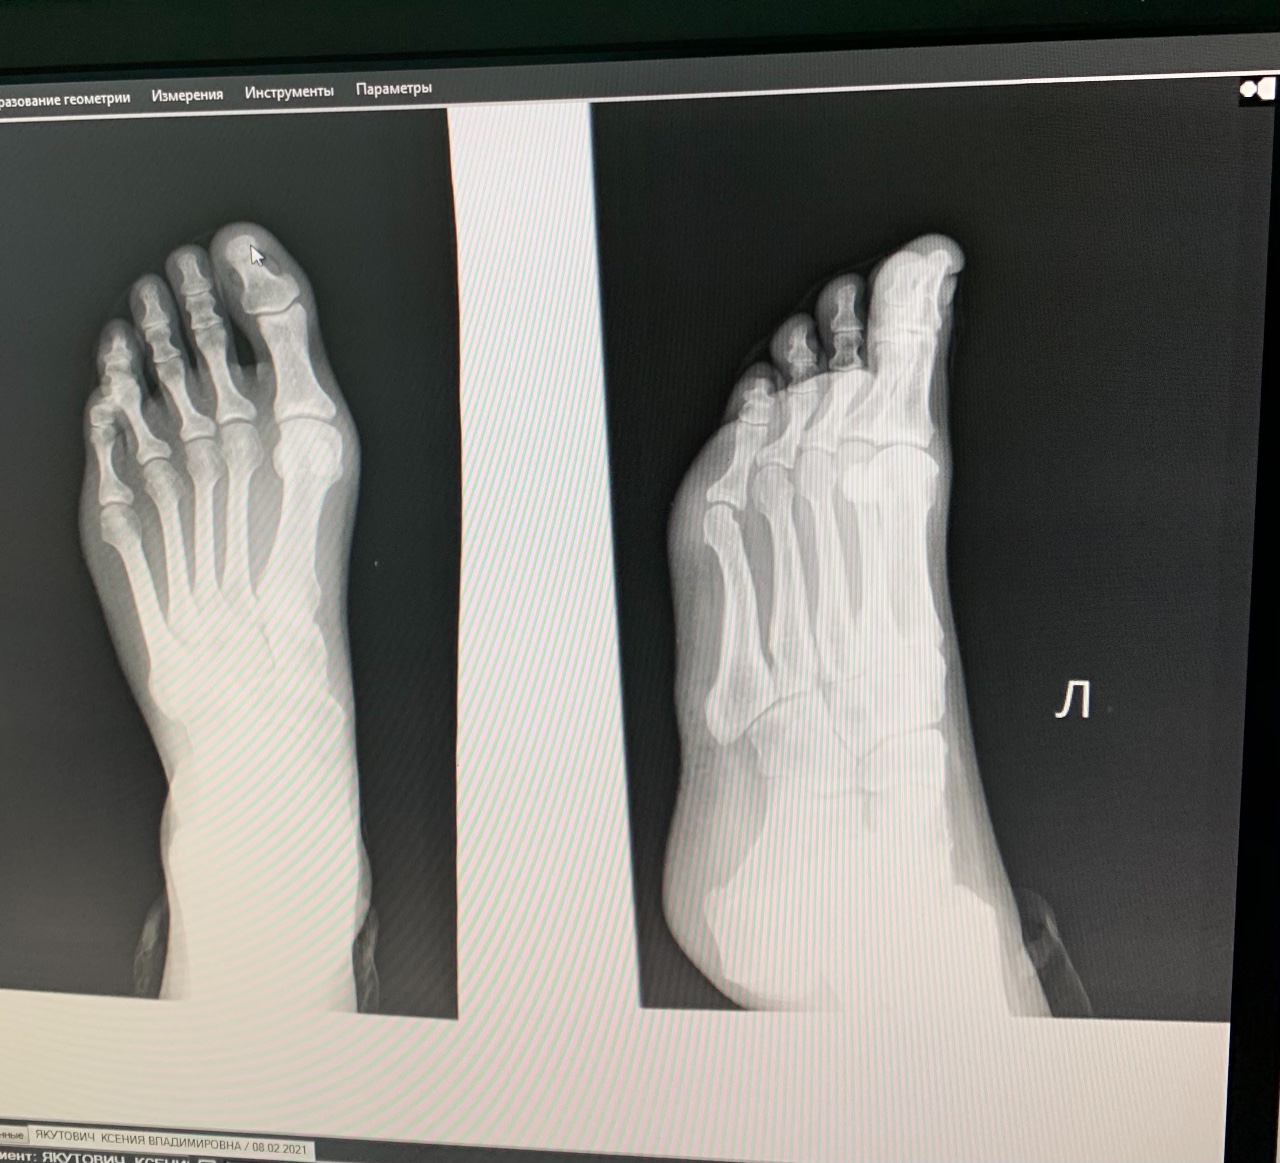 Ногтевой фаланги пальца ноги. Экзостоз 1 пальца стопы на рентгене. Экзостоз ногтевой фаланги 1 пальца стопы. Экзостоз пальца стопы рентген.